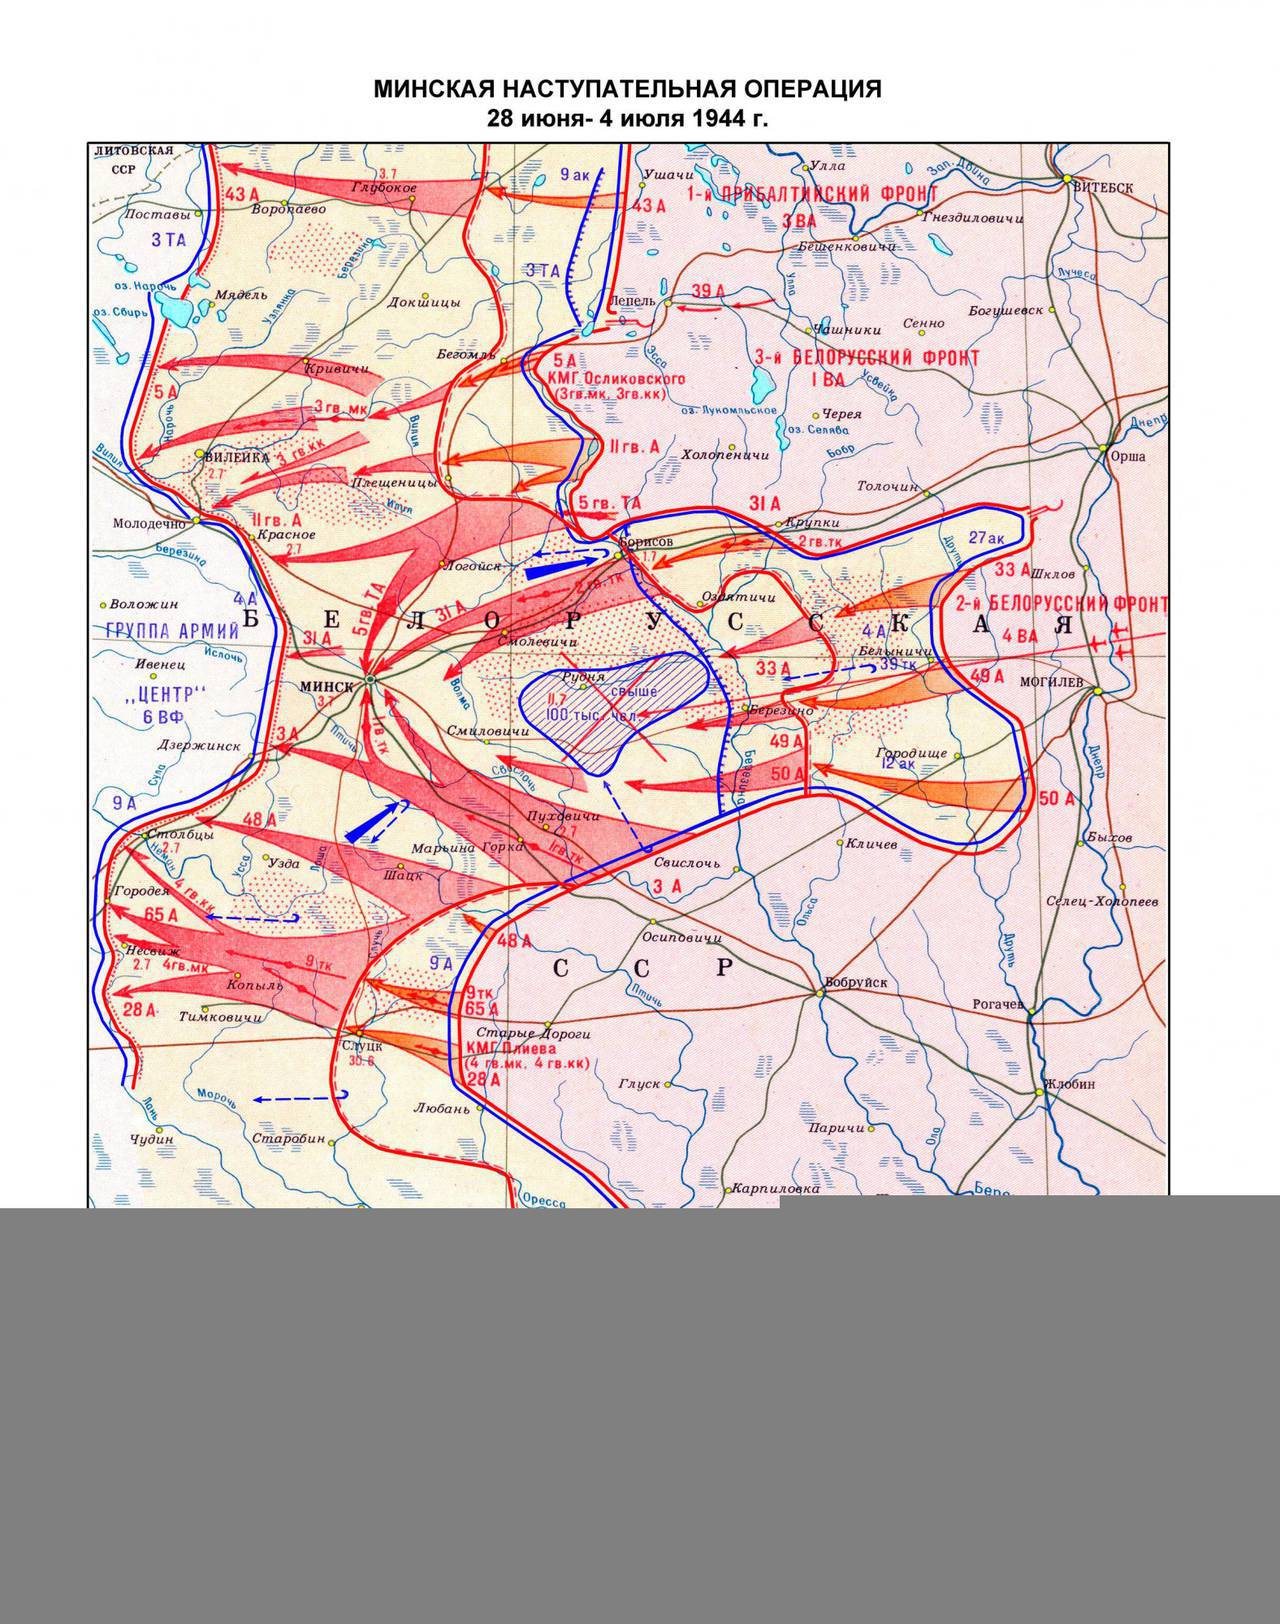 Белорусская операция пятый сталинский удар. Карта 10 сталинских ударов 1944. Карта сталинских ударов. 7 Сталинский удар. Освобождение Минска в 1944 году.